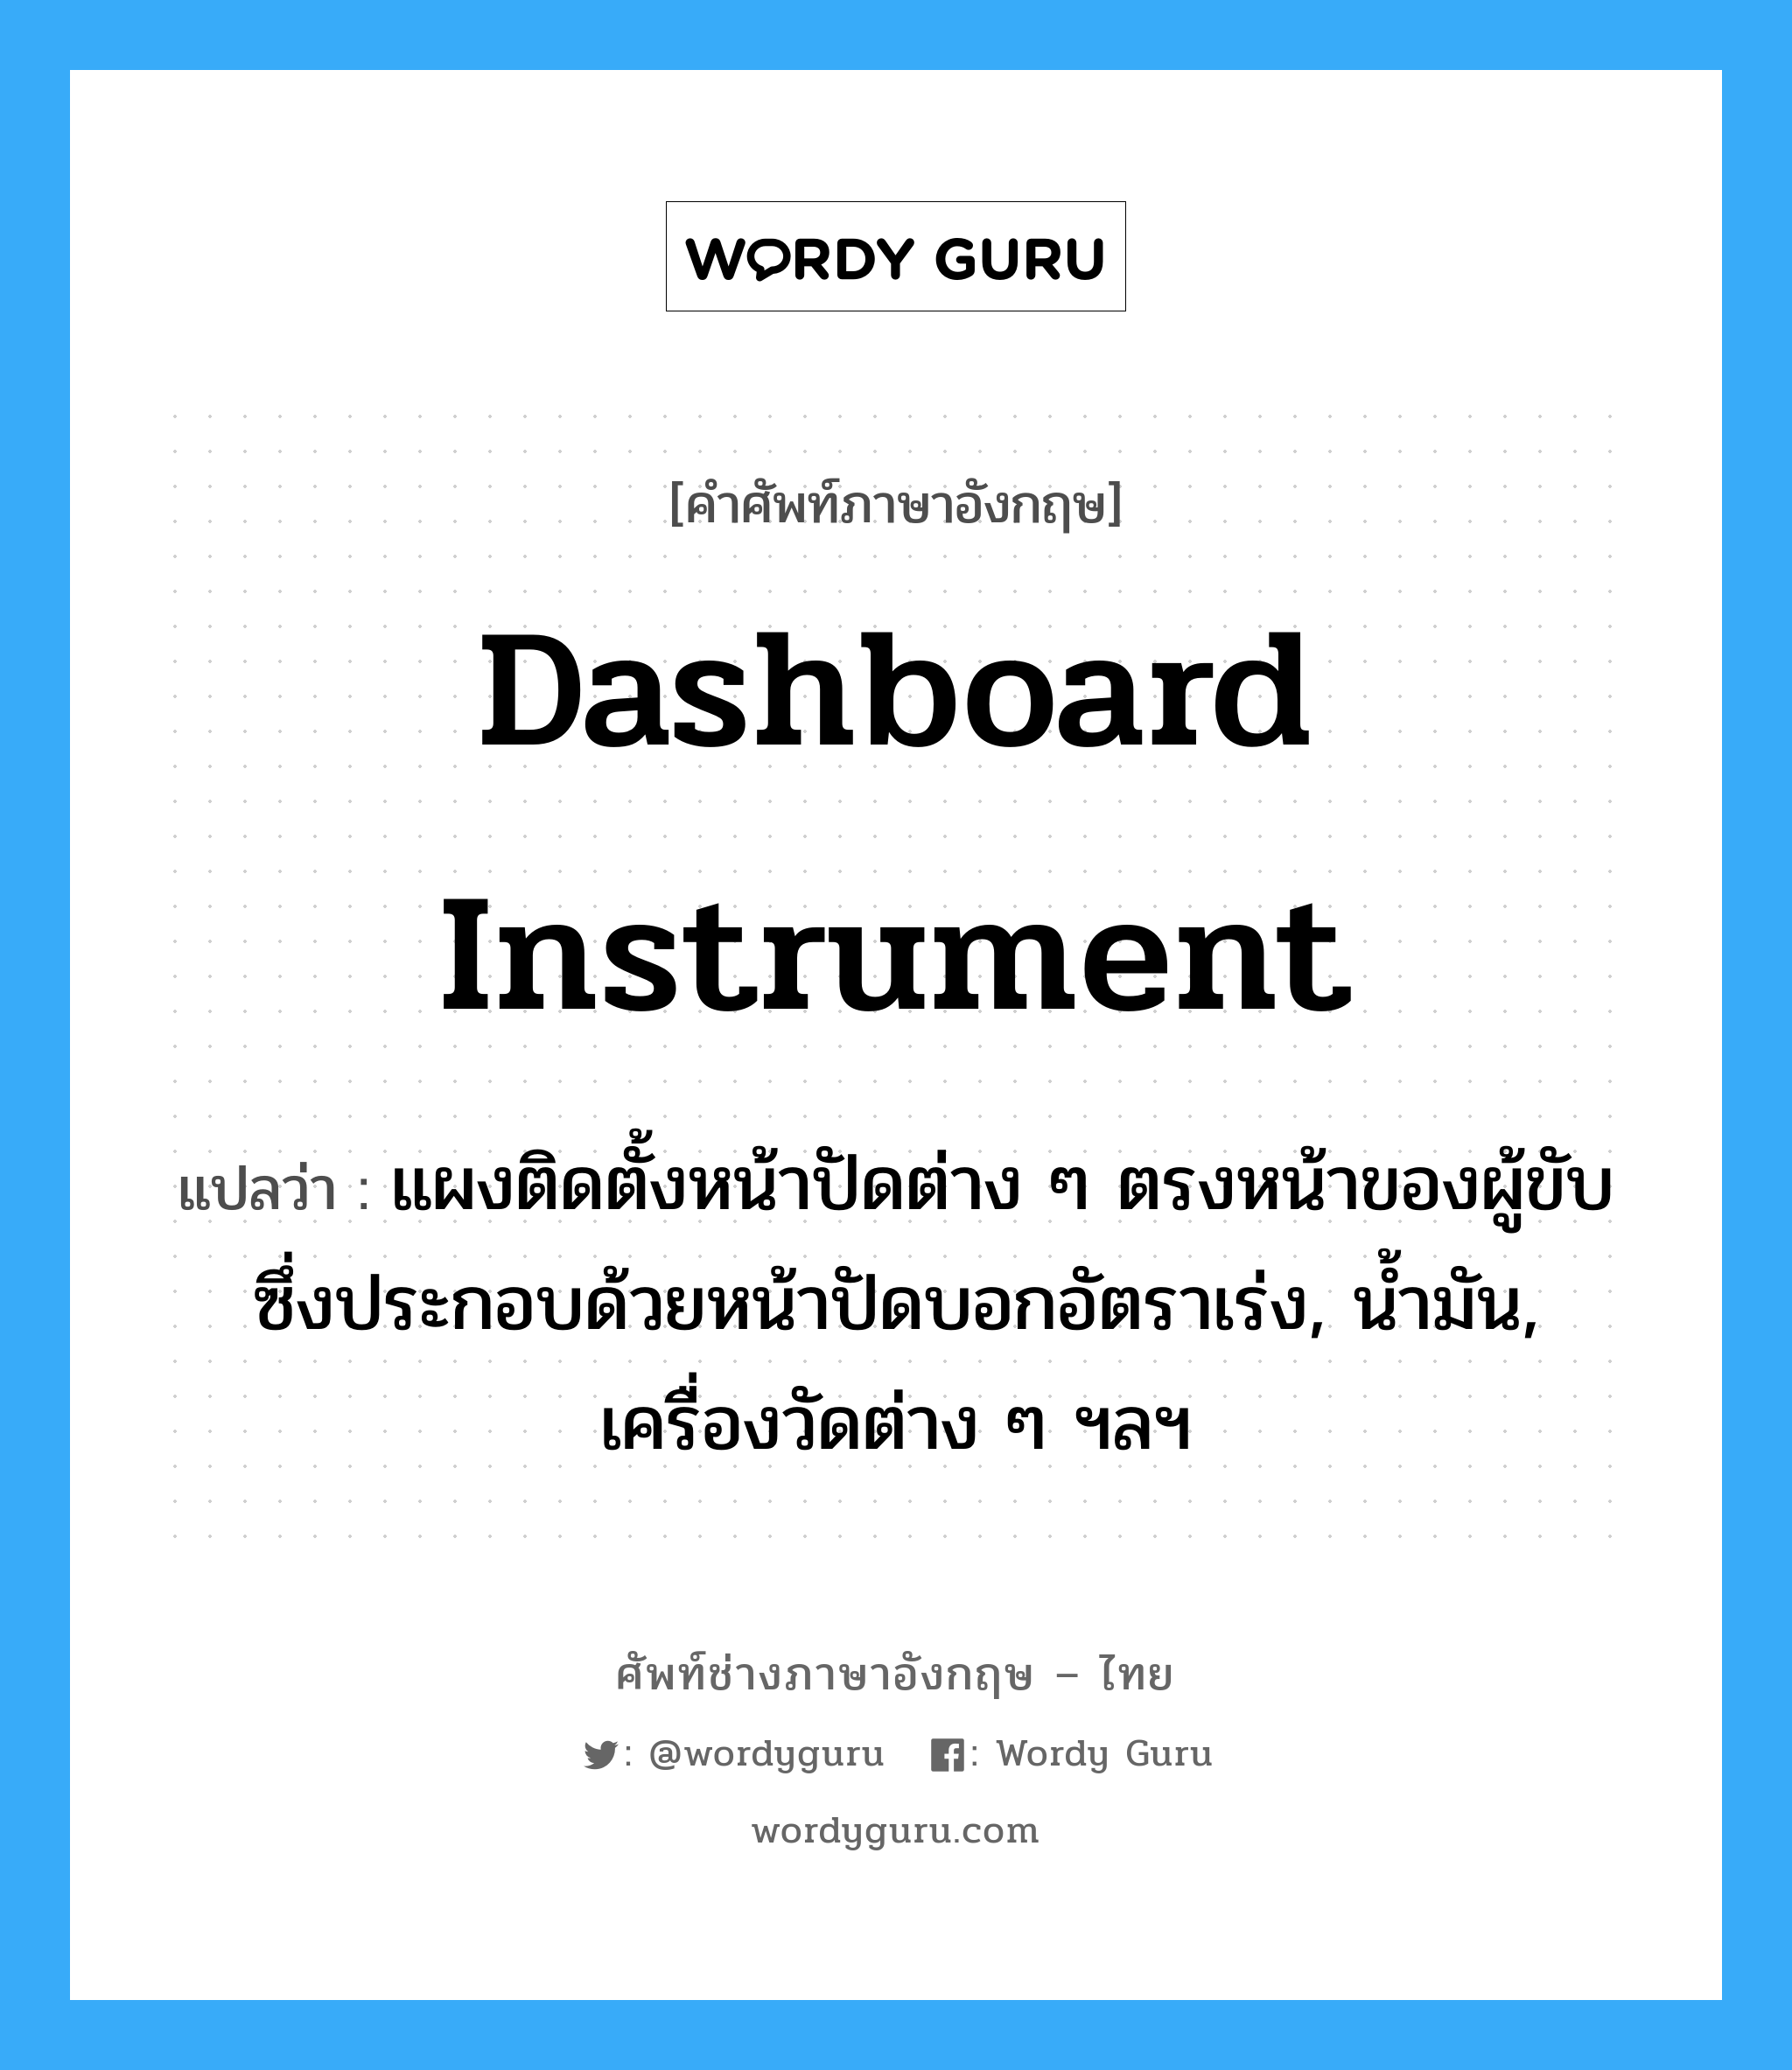 dashboard instrument แปลว่า?, คำศัพท์ช่างภาษาอังกฤษ - ไทย dashboard instrument คำศัพท์ภาษาอังกฤษ dashboard instrument แปลว่า แผงติดตั้งหน้าปัดต่าง ๆ ตรงหน้าของผู้ขับ ซึ่งประกอบด้วยหน้าปัดบอกอัตราเร่ง, น้ำมัน, เครื่องวัดต่าง ๆ ฯลฯ